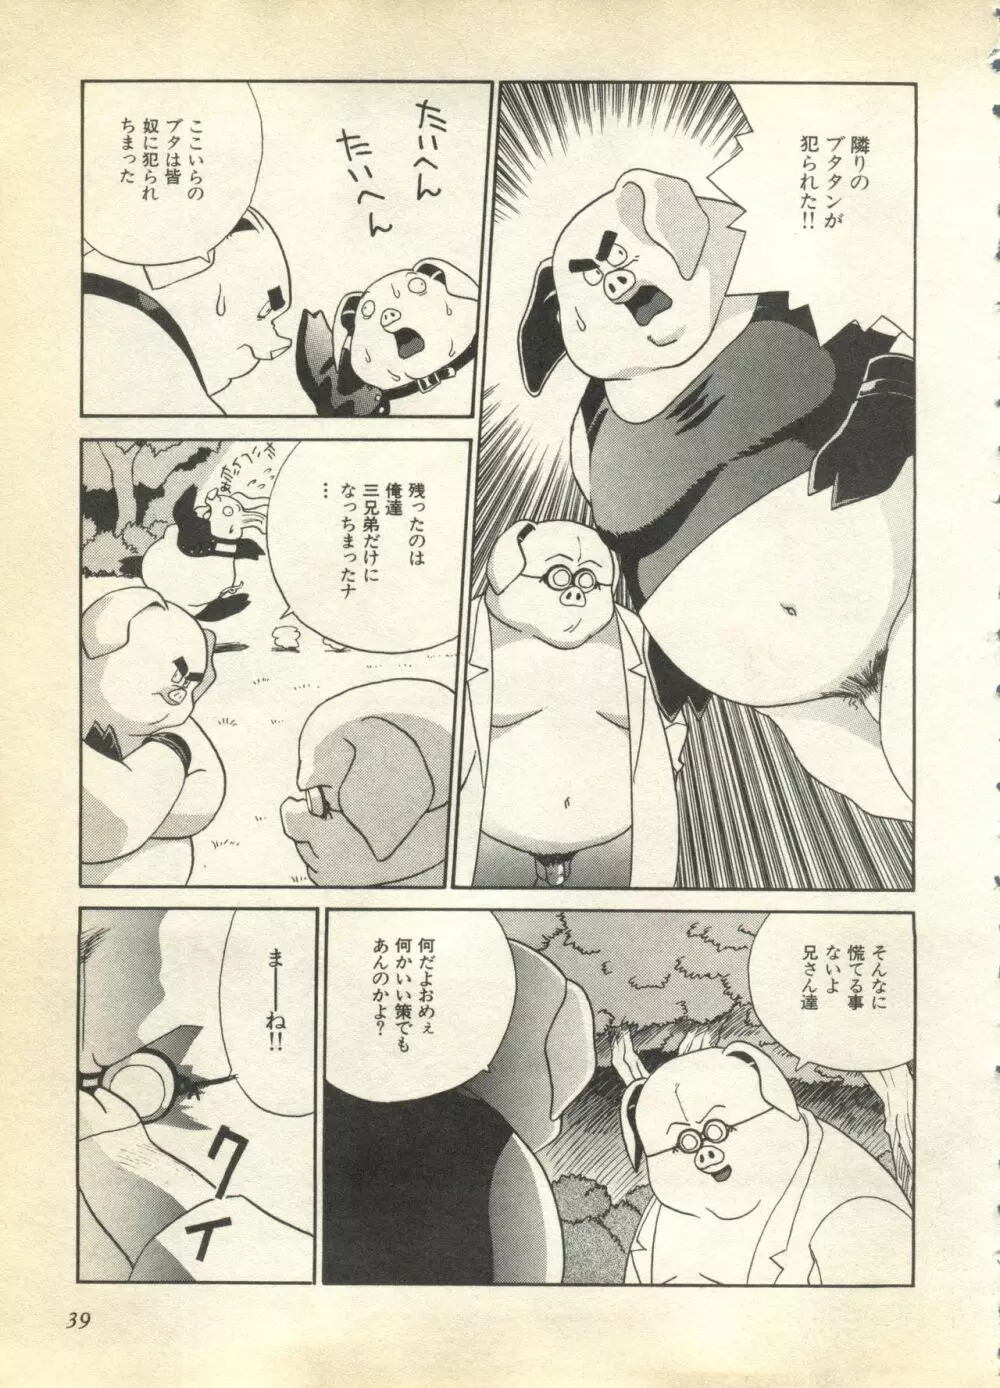 パイク Pai.kuu 1997 Dec 七 39ページ